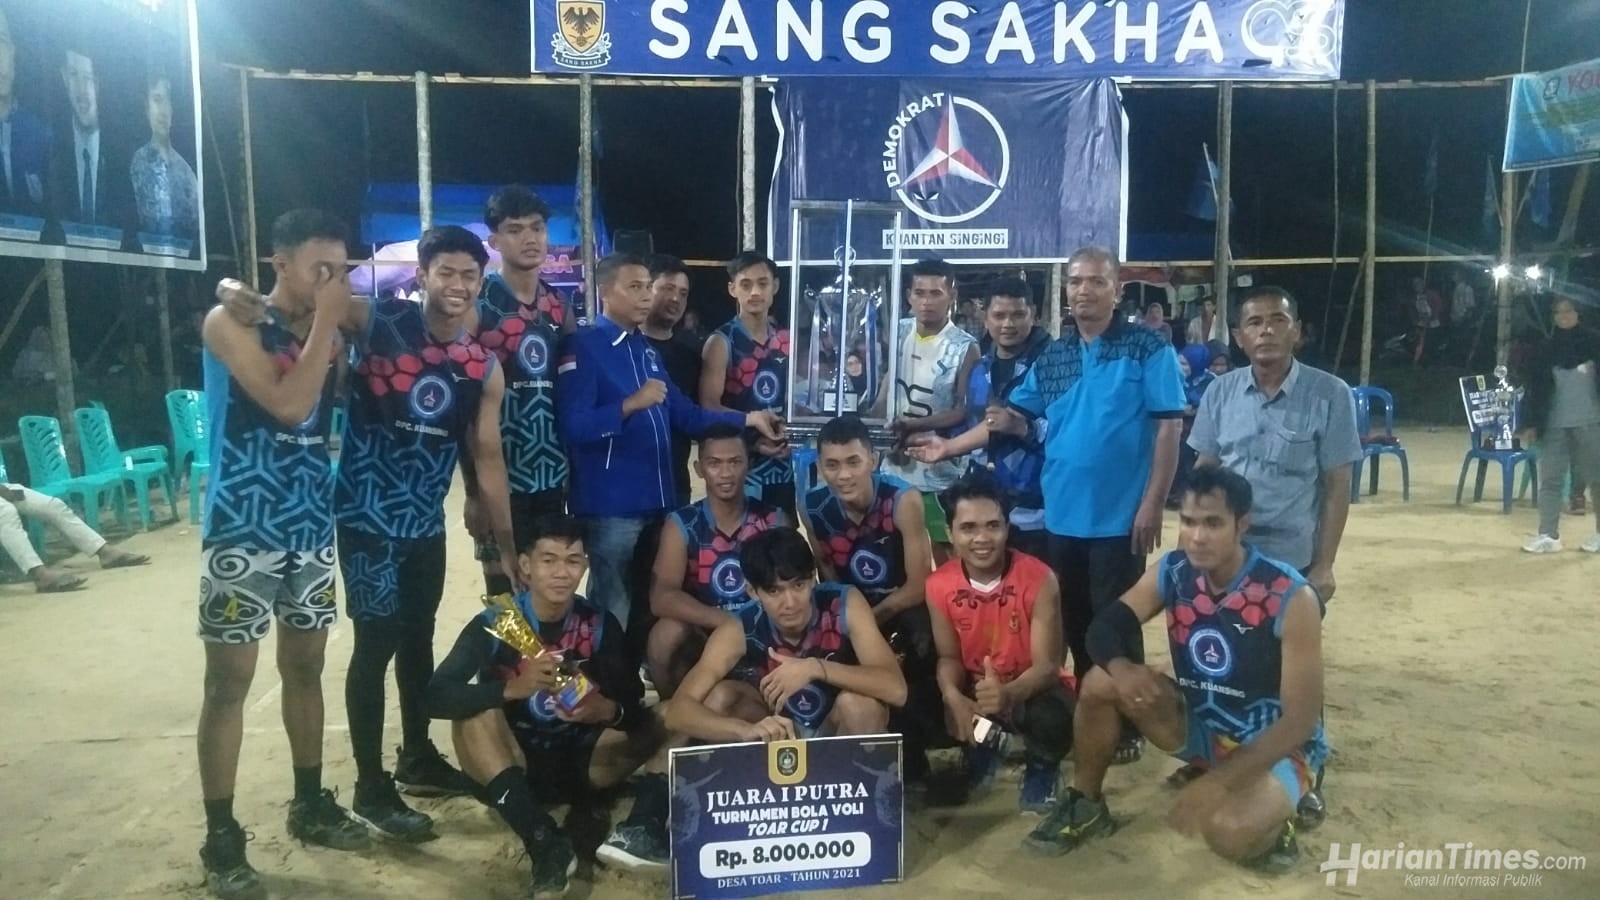 Turnamen Volly Ball Toar Cup I Tahun 2021 Usai, Sang Sakha Pemdes Toar Raih Gelar Sang Jawara